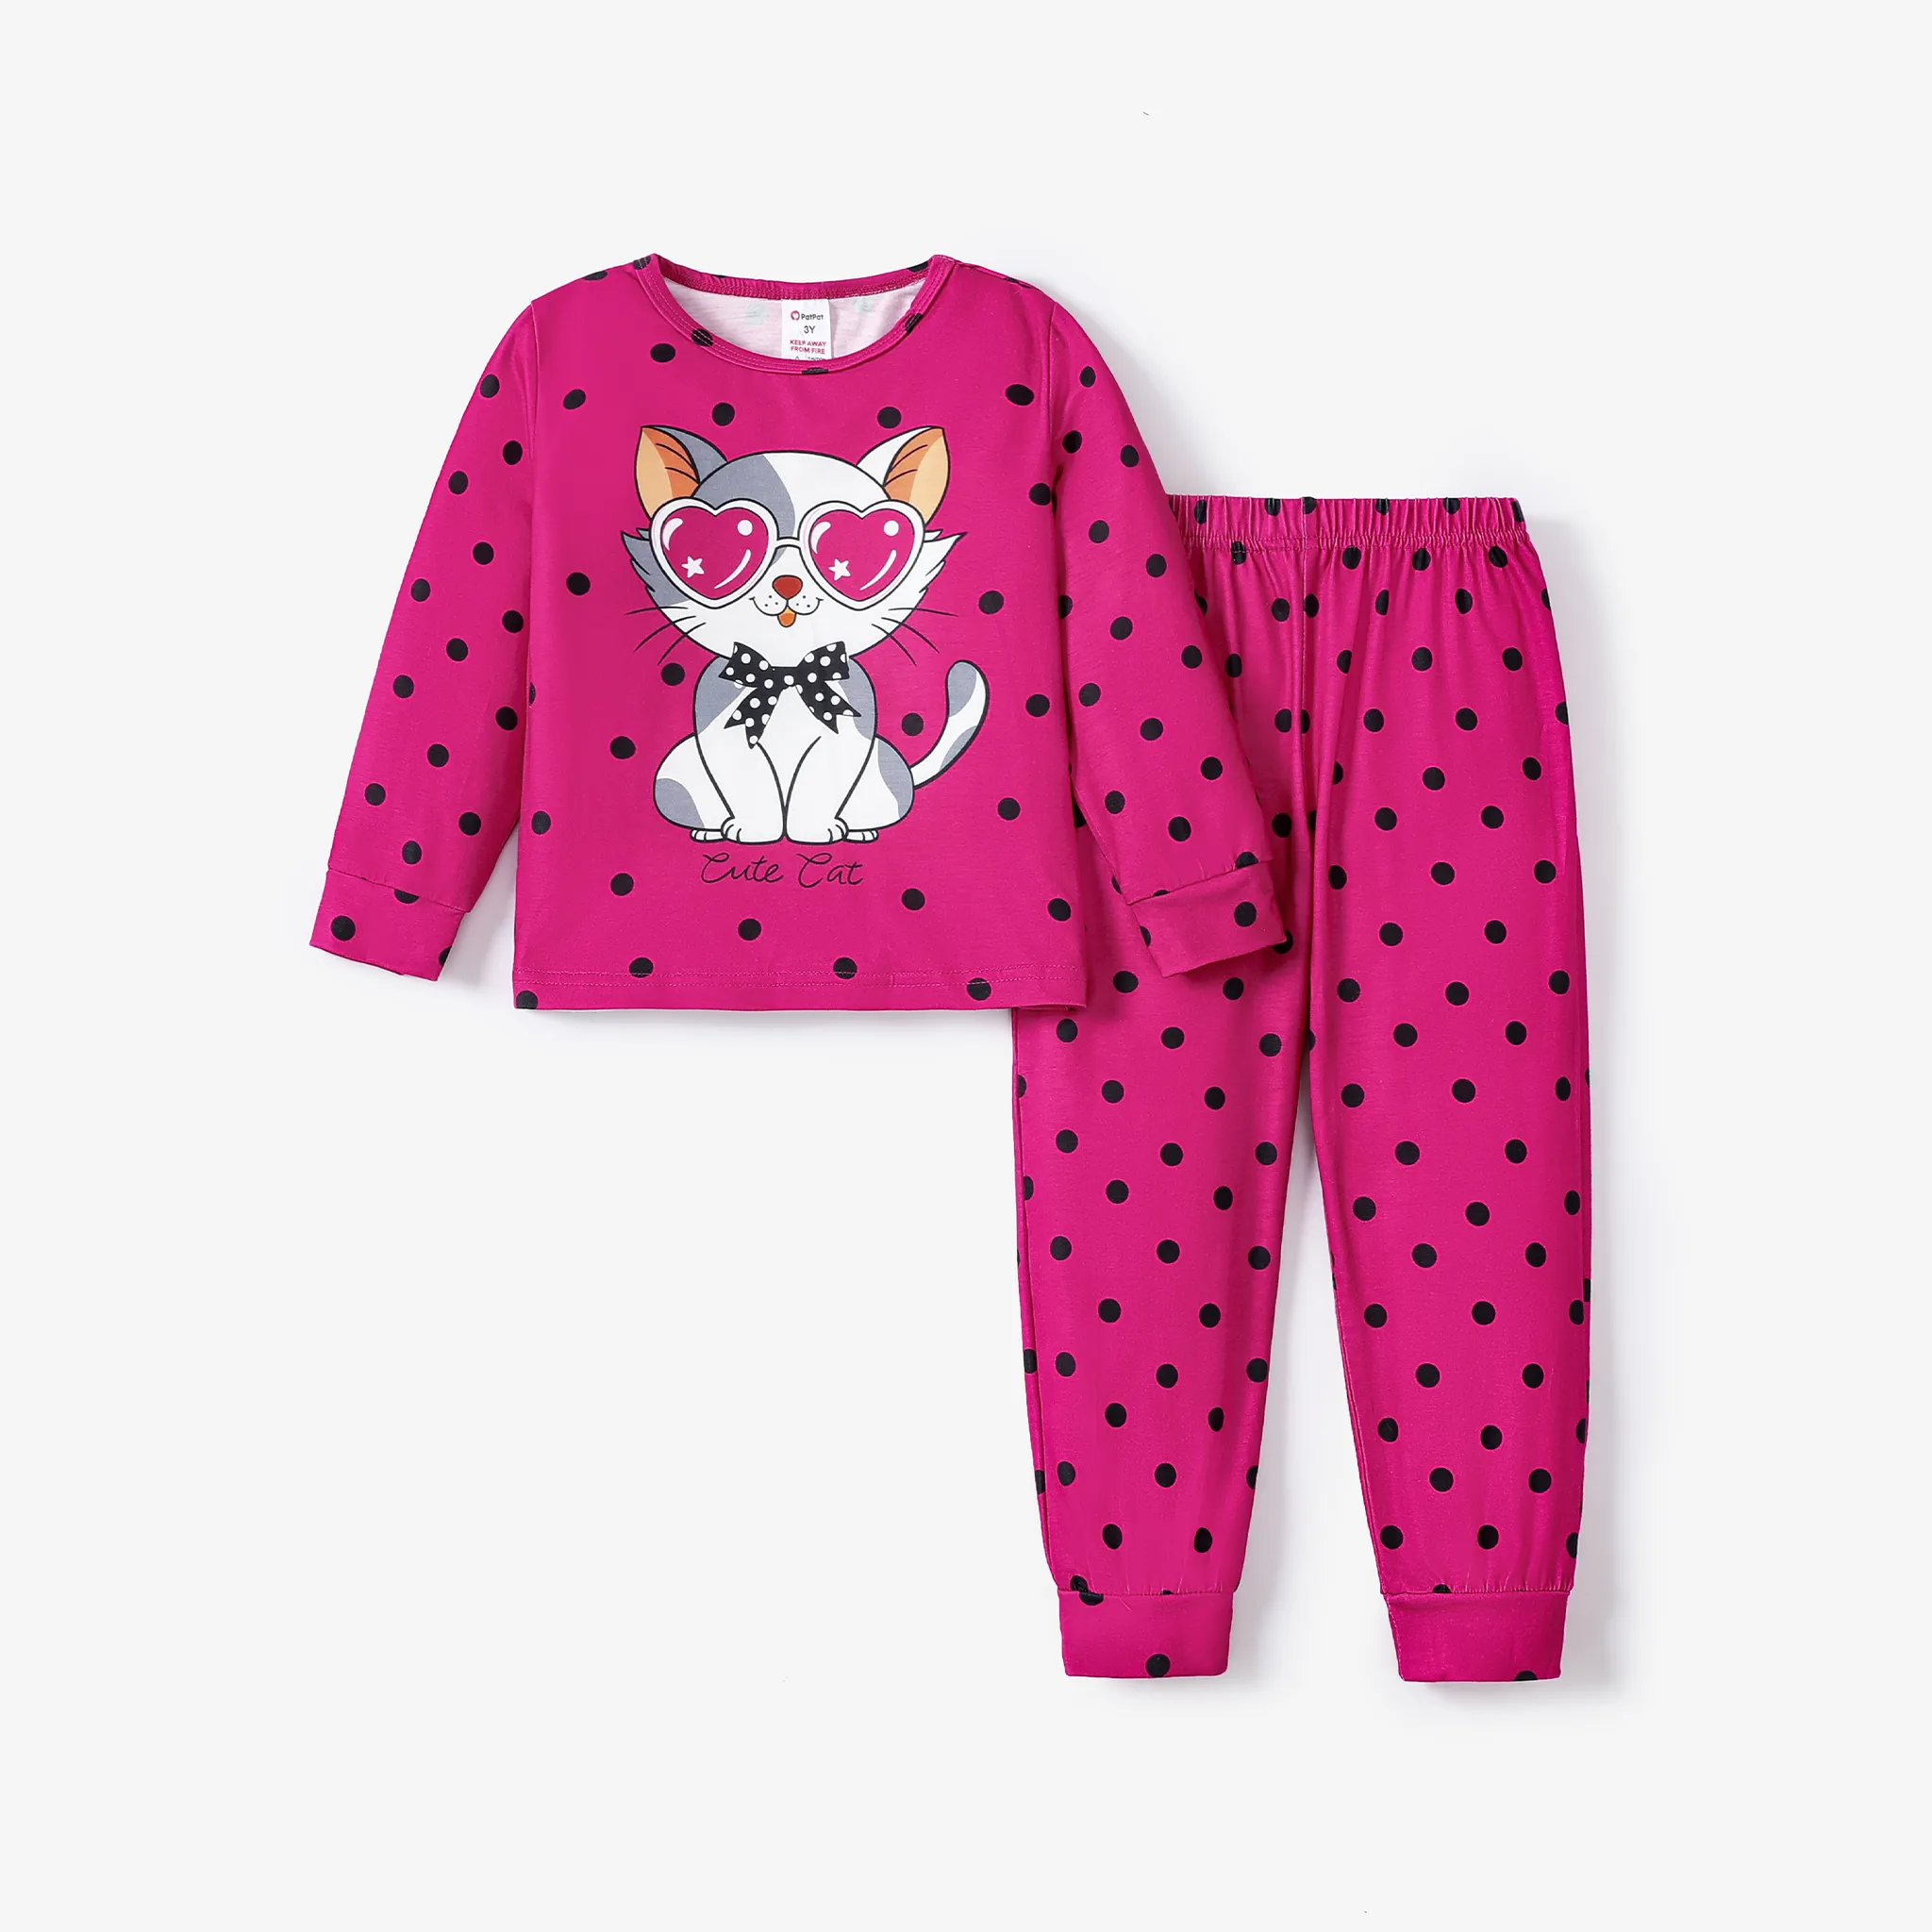 2pcs Baby/Toddler Girl Sweet Cat And Polka Dot Pattern Pajamas